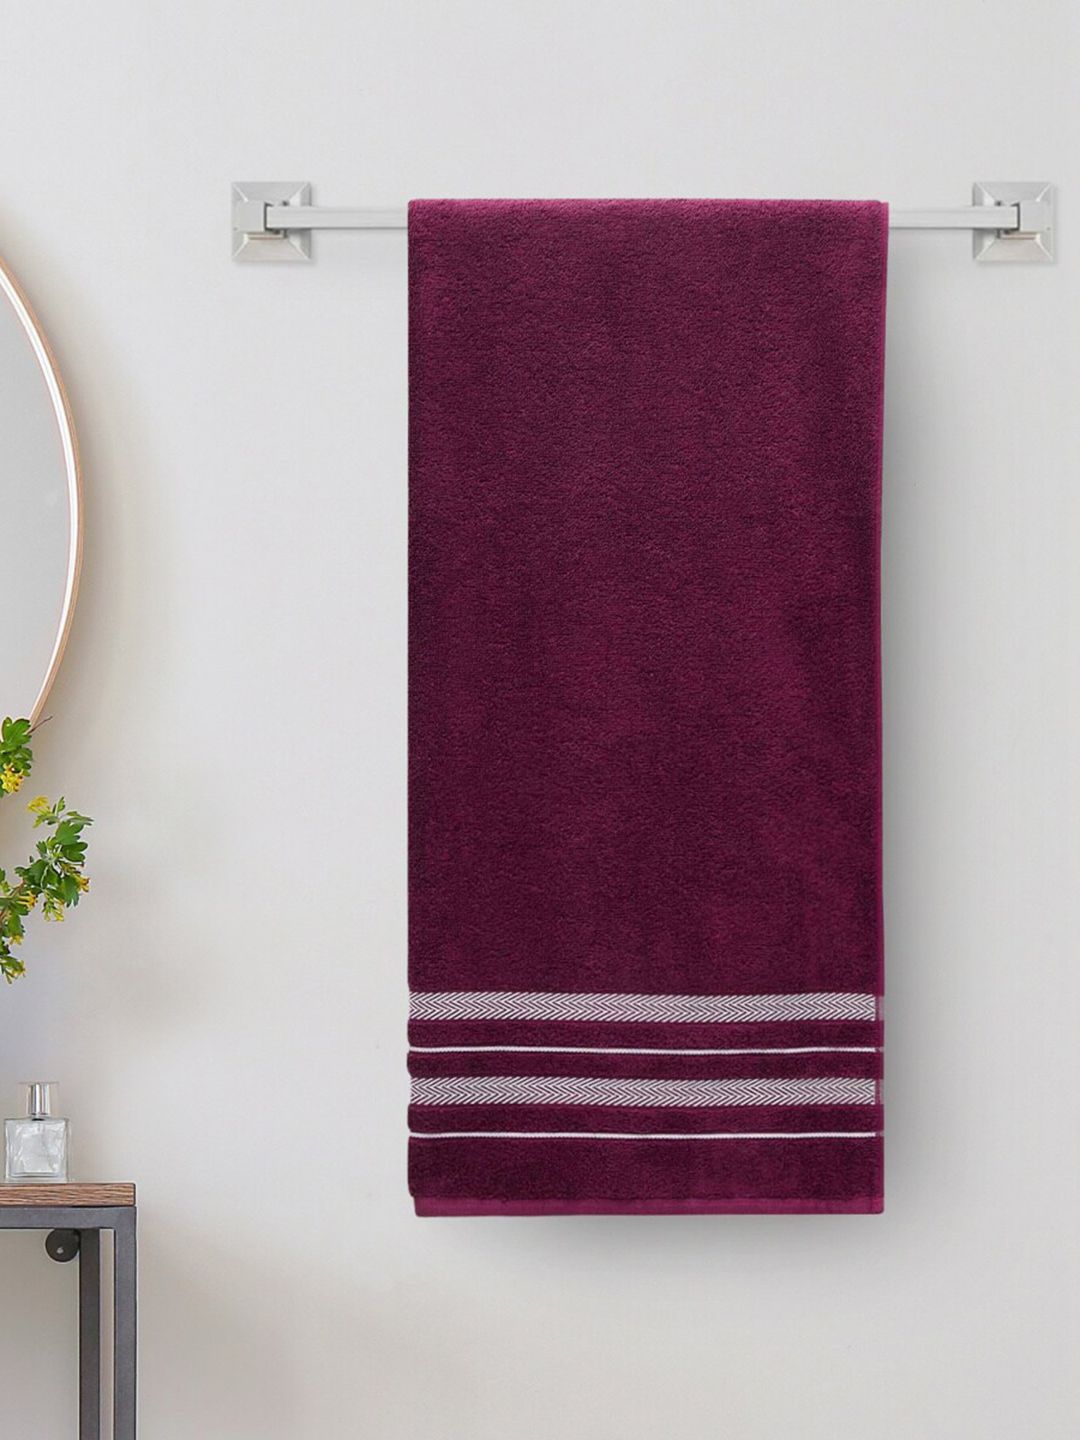 Home Centre Purple Striped 380GSM Cotton Bath Towel Price in India